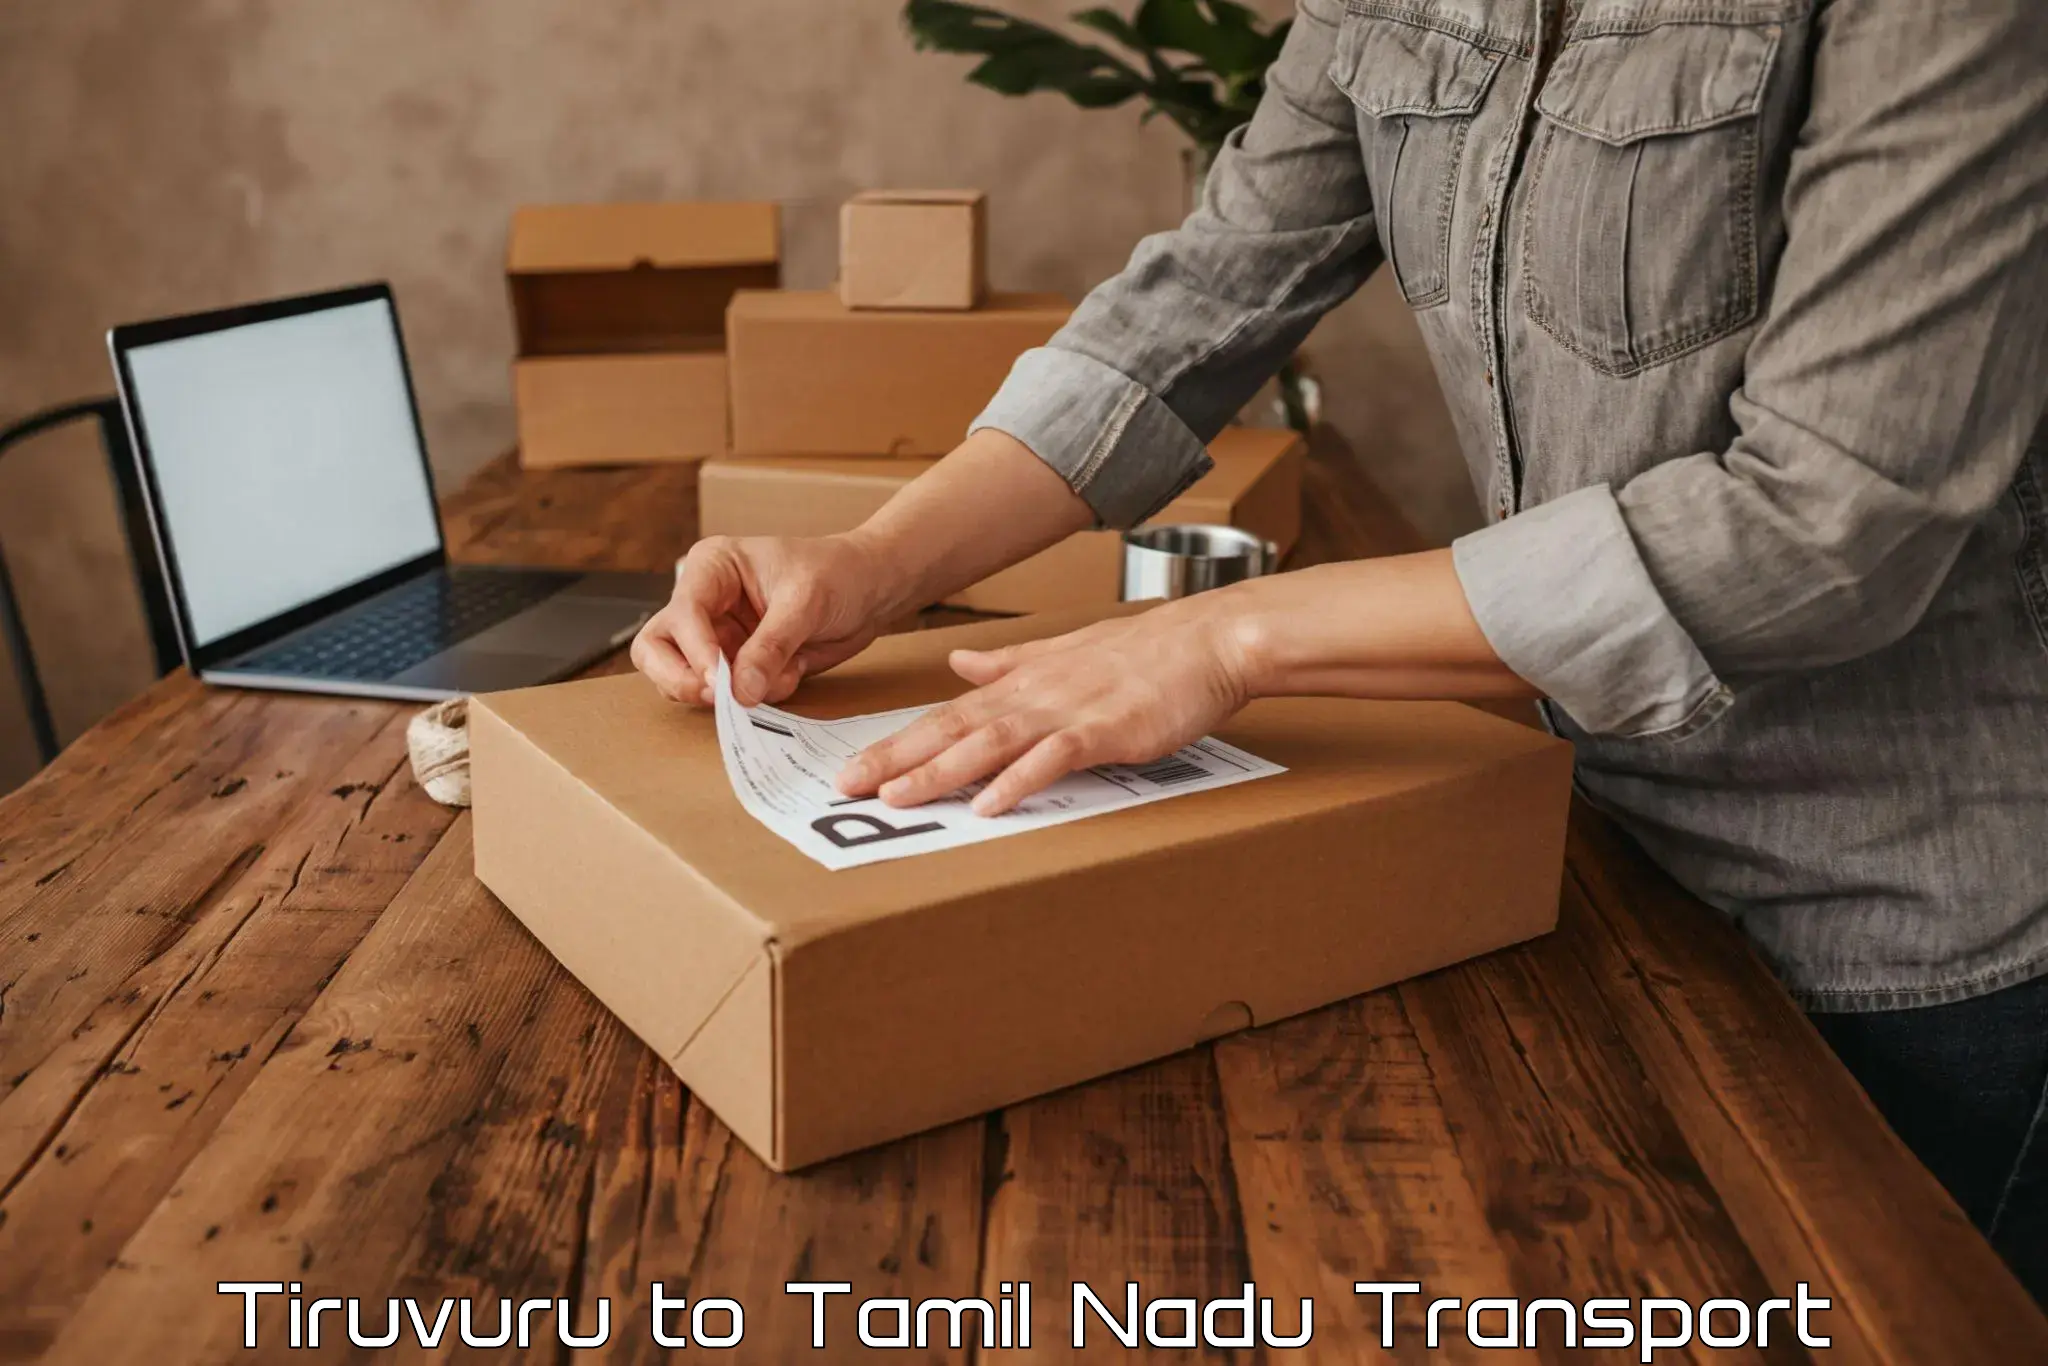 Furniture transport service Tiruvuru to Rajapalayam